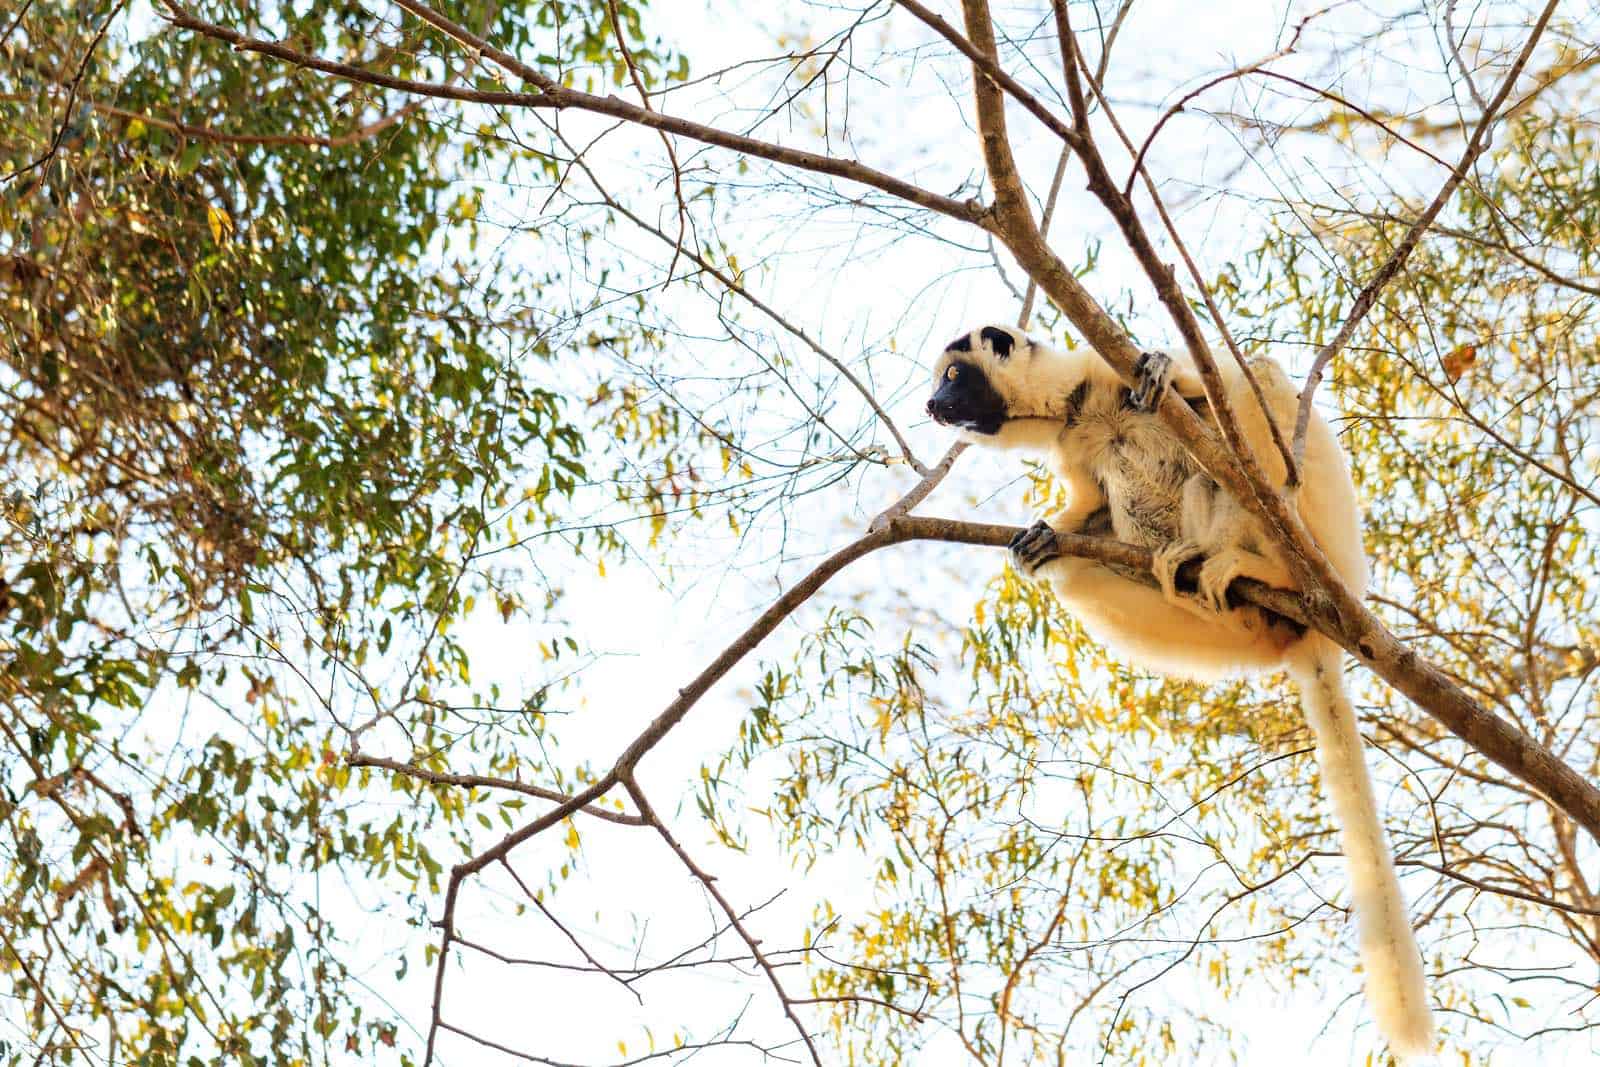 Lemur i Madagaskar